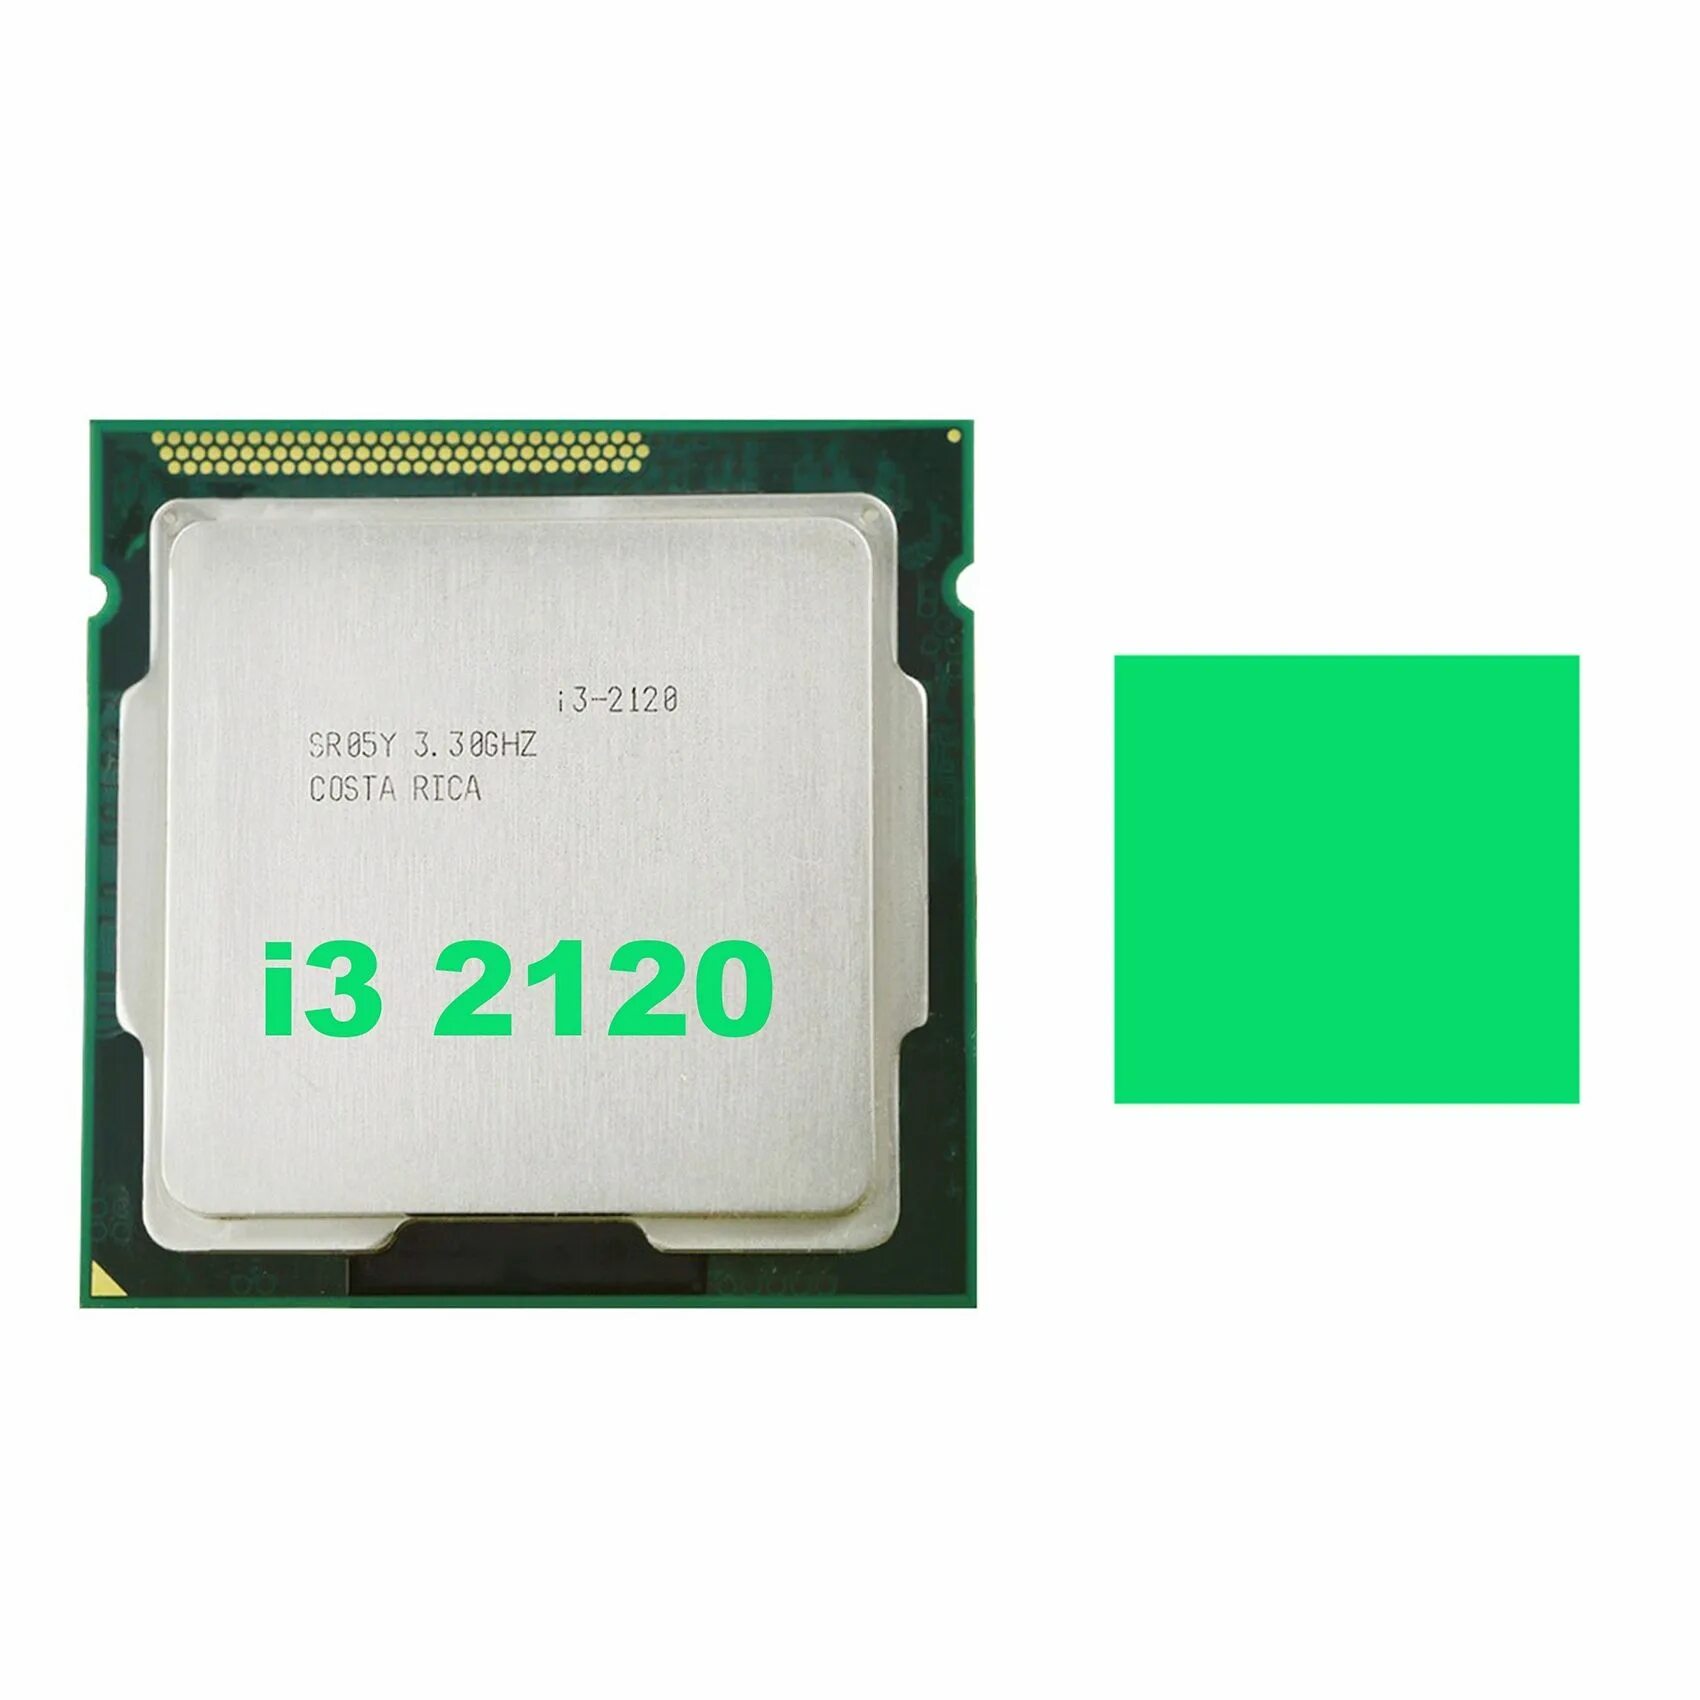 Процессор: Intel Core i3 2120, 3.3 ГГЦ;. Процессор Intel Core i3 2120 CPU 3.30GHZ. Intel(r) Core(TM) i3-2120 CPU @ 3.30GHZ 3.30 GHZ. 1155 Процессоры. 2120 сокет